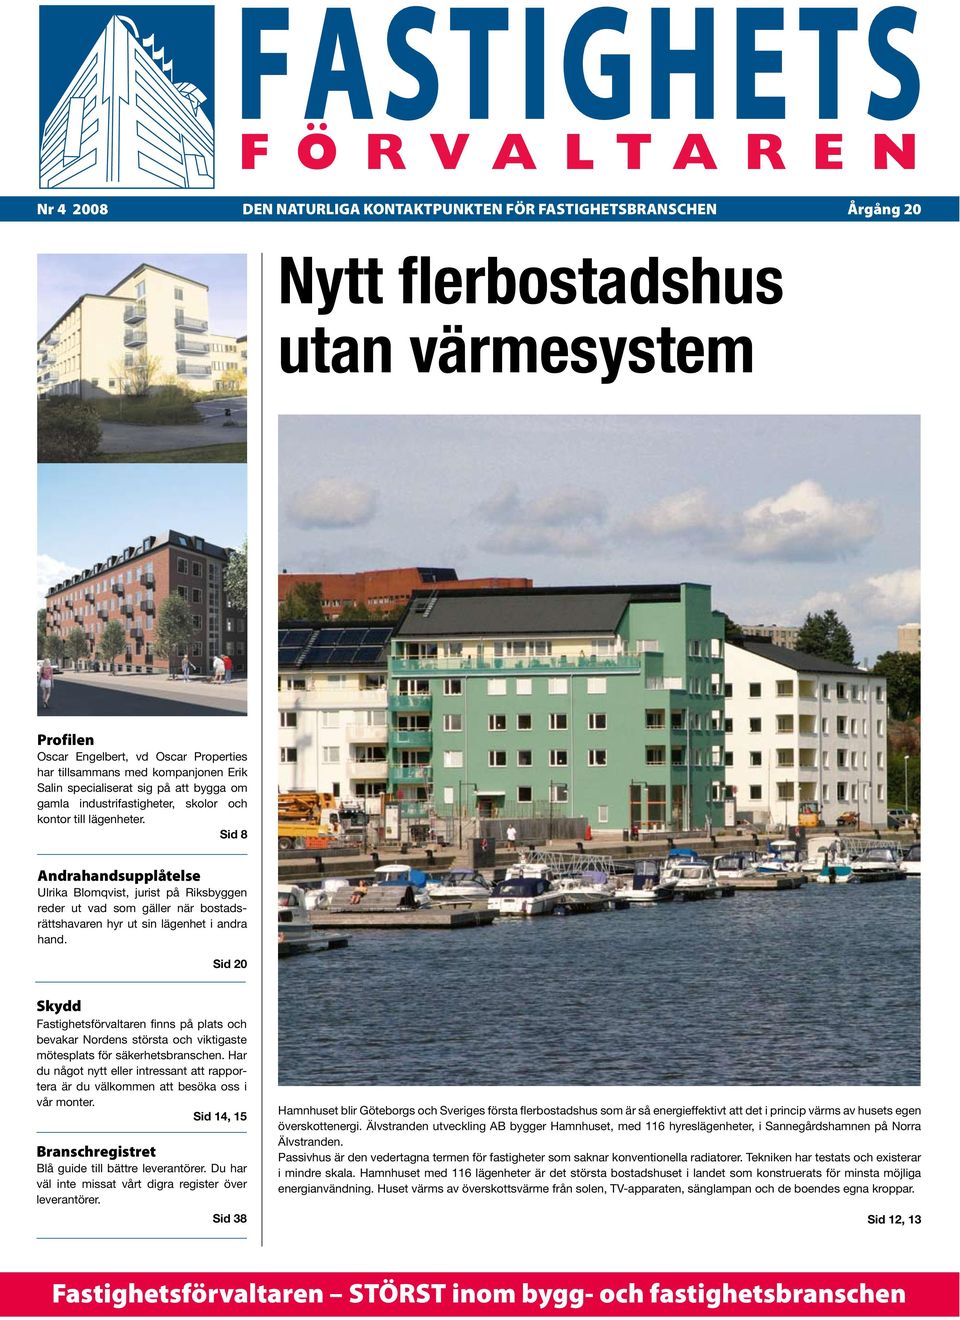 Sid 8 Andrahandsupplåtelse Ulrika Blomqvist, jurist på Riksbyggen reder ut vad som gäller när bostadsrättshavaren hyr ut sin lägenhet i andra hand.